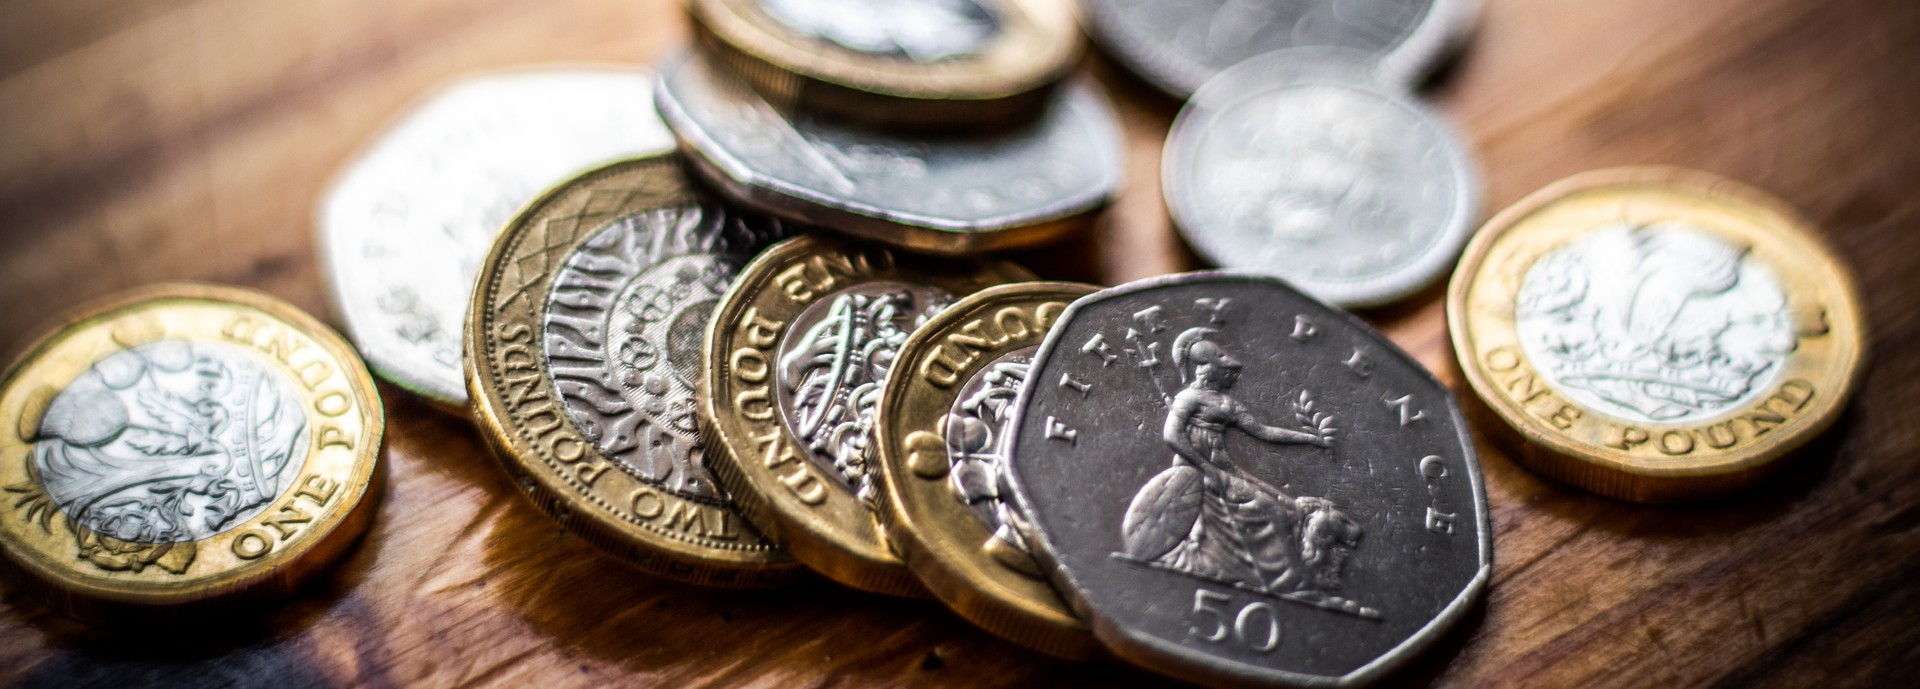 UK coins spread across a table